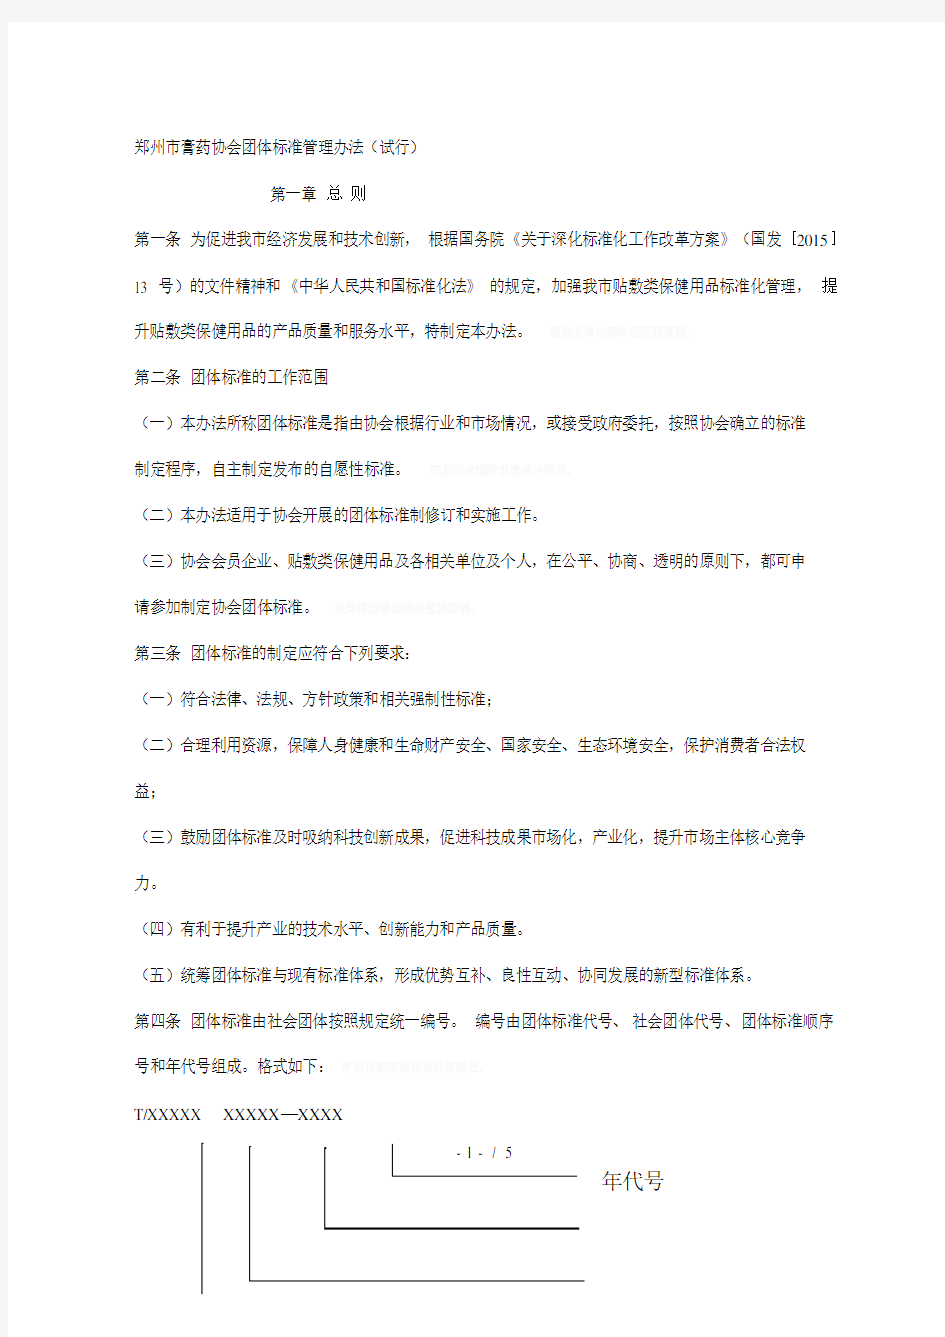 郑州市膏药协会团体标准管理办法(试行)